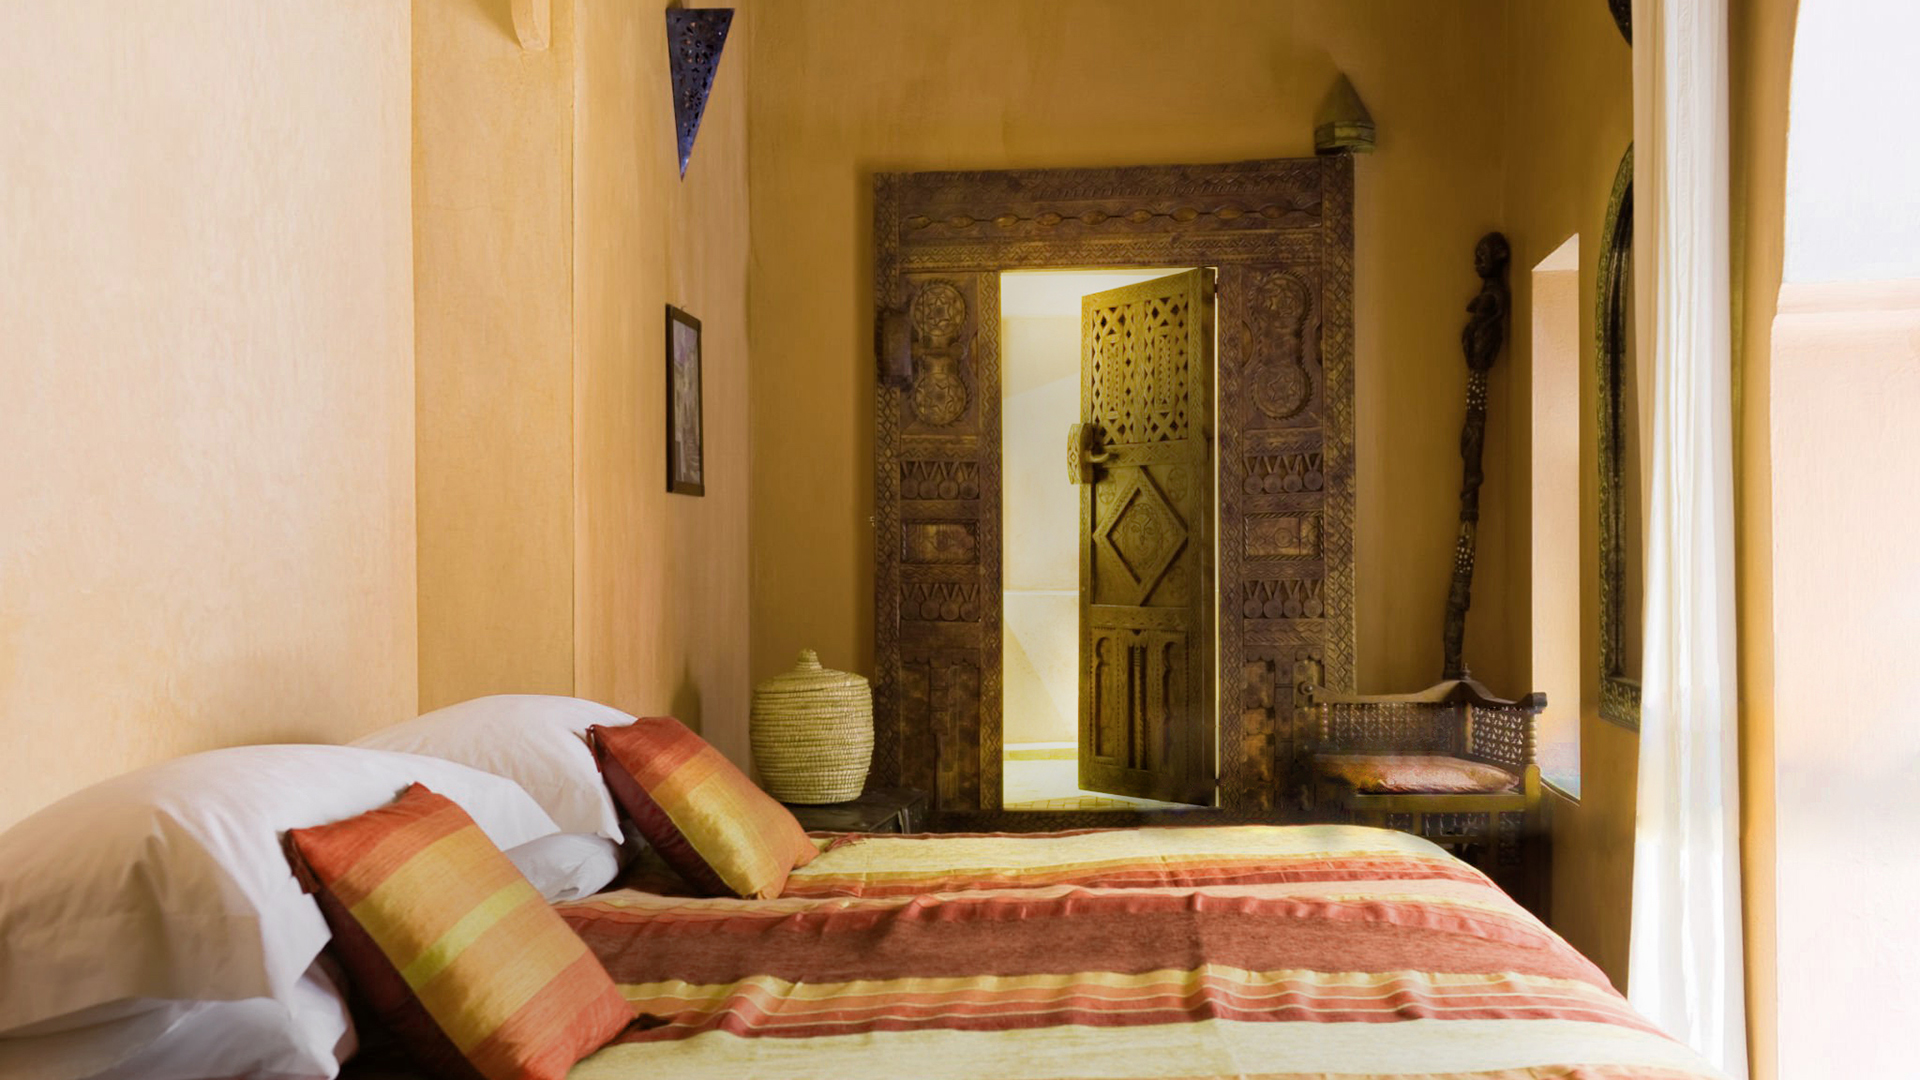 dormitorio estilo árabe con tadelakt en paredes